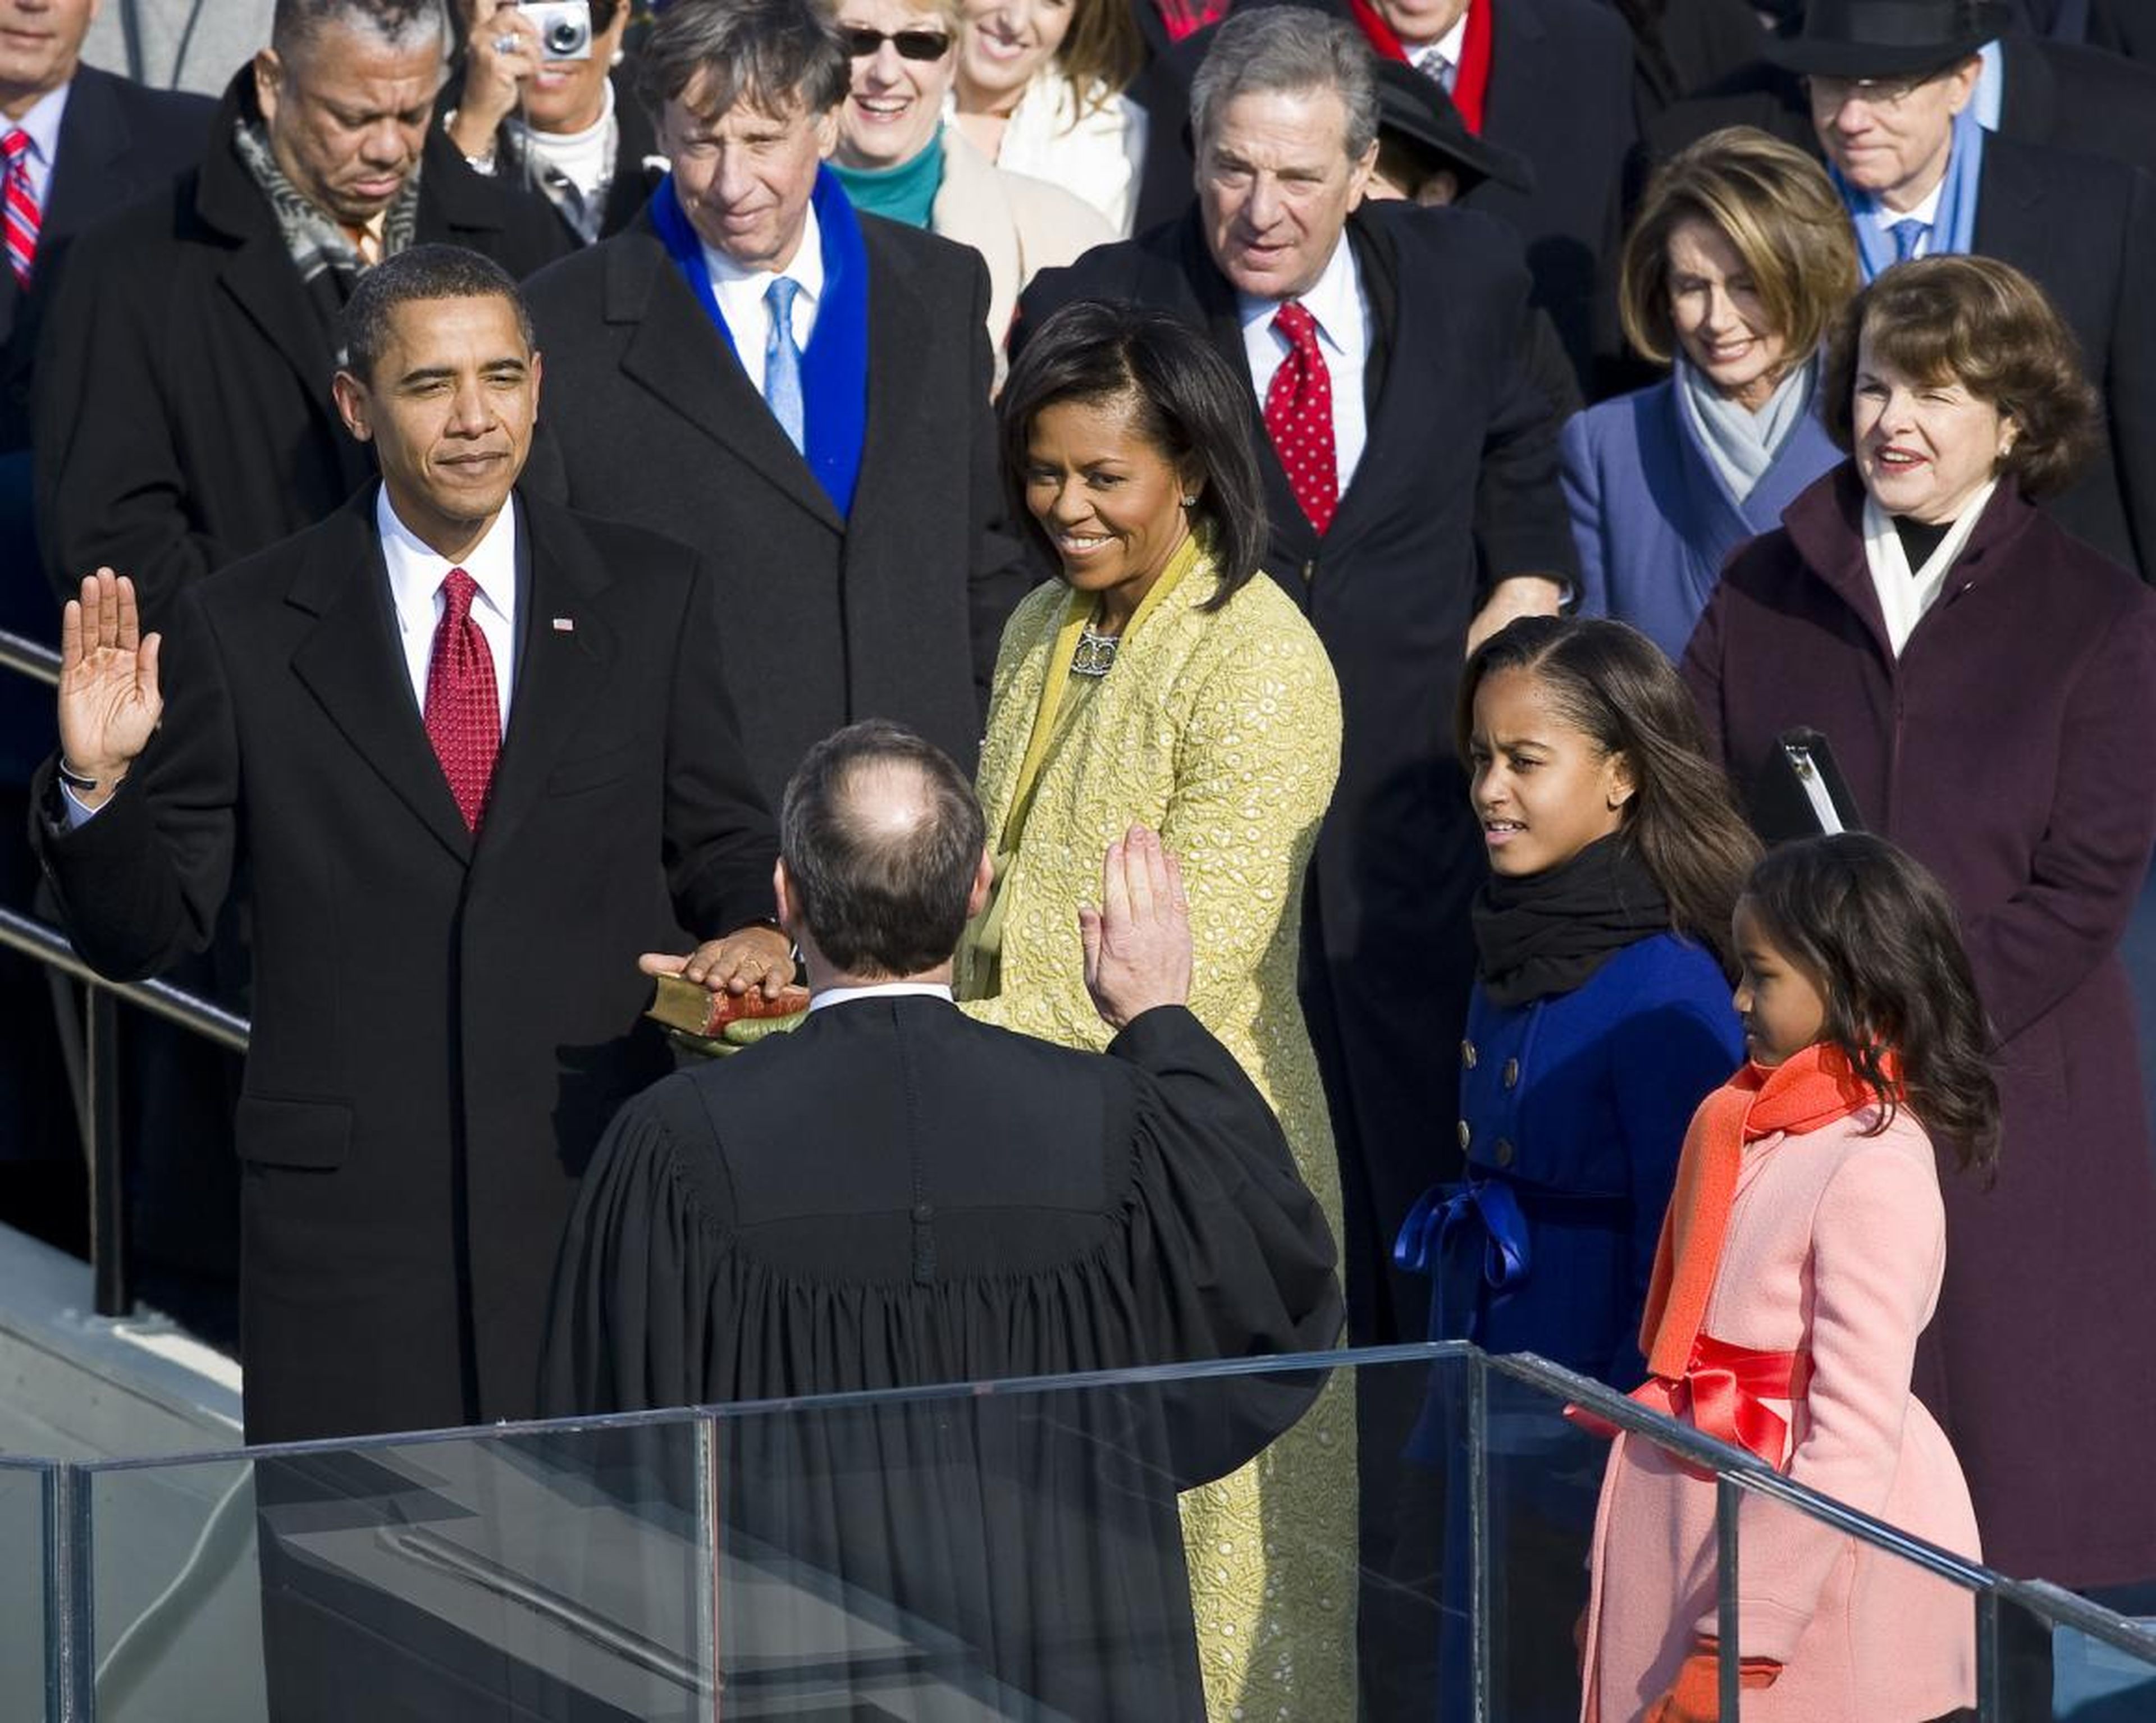 El presidente electo Barack Obama jura como el 44º presidente de los Estados Unidos en 2009, junto a Michelle Obama y sus hijas Malia y Sasha.